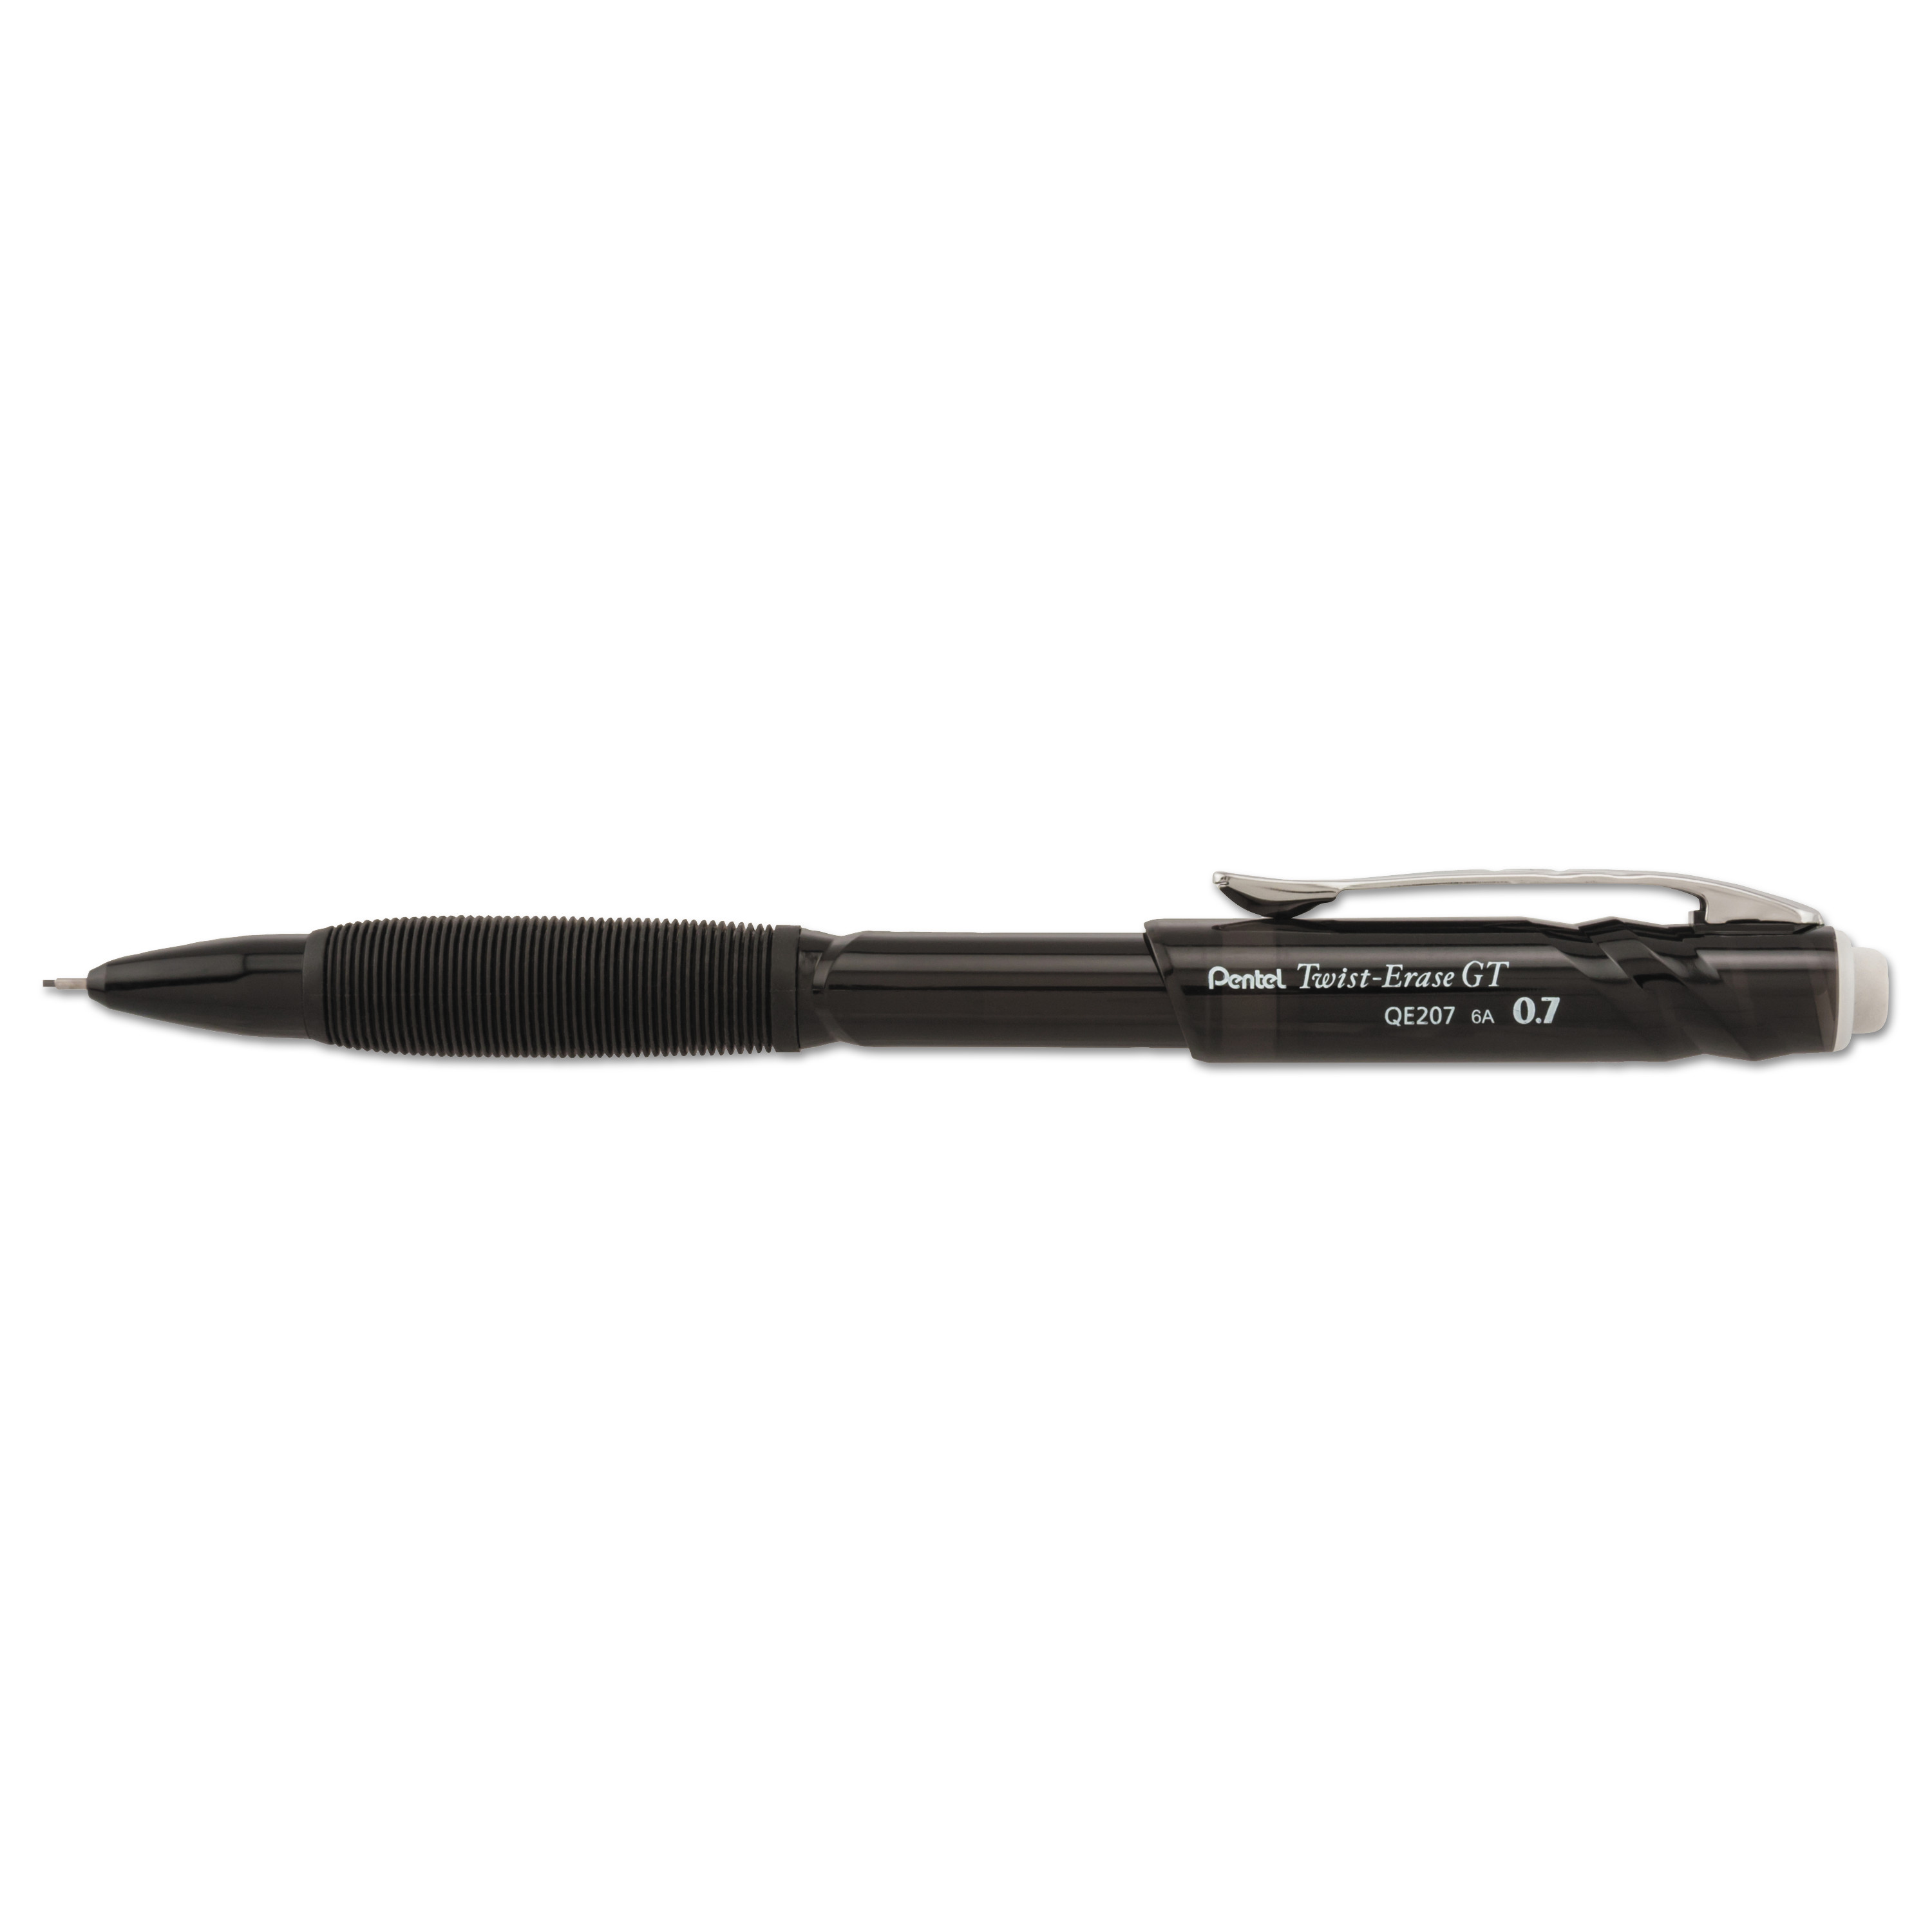  Pentel QE207A Twist-Erase GT Pencils, 0.7 mm, HB (#2.5), Black Lead, Black Barrel (PENQE207A) 